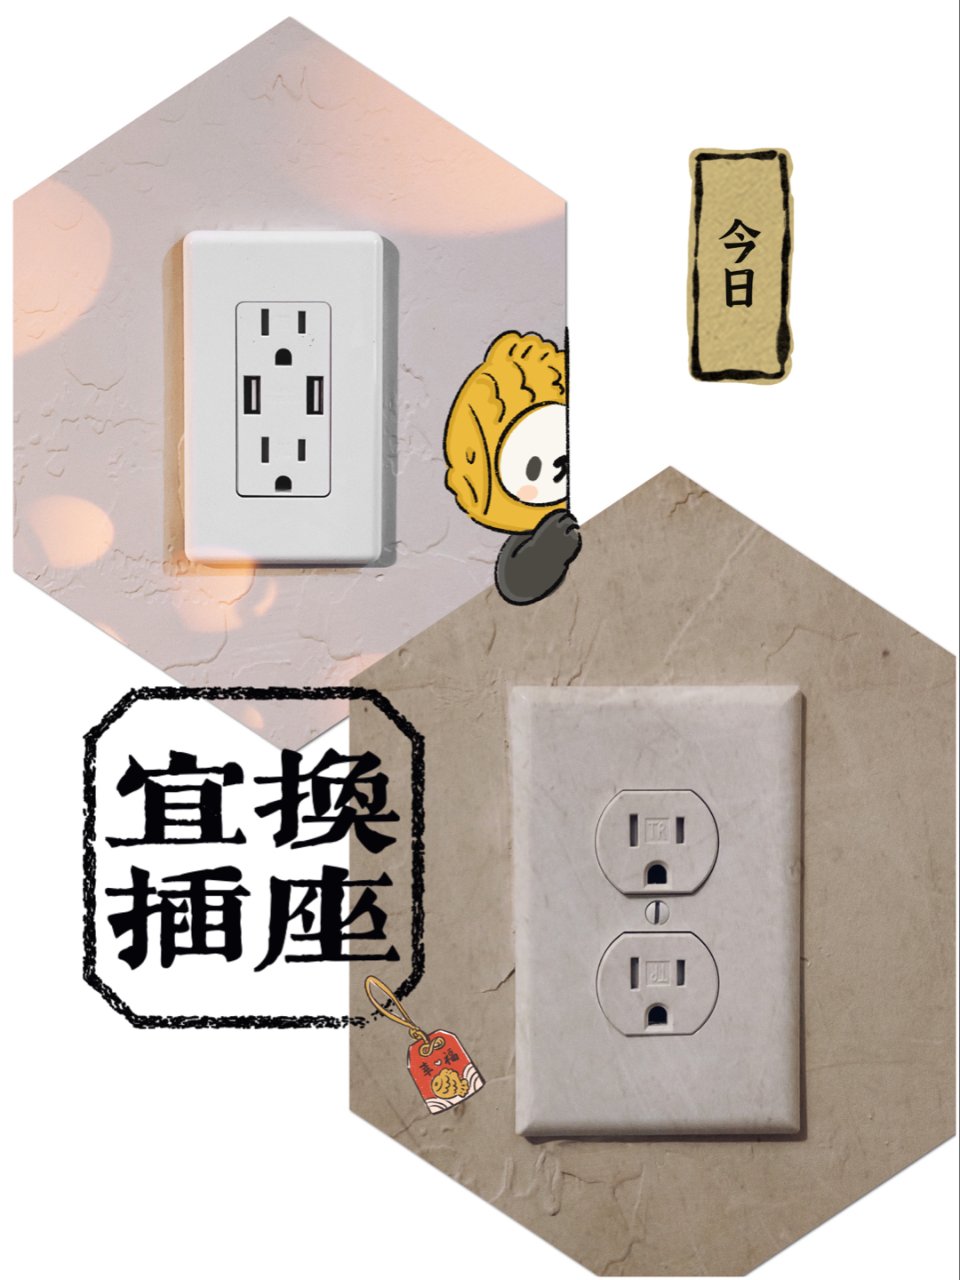 插座升级：增加USB插口 ｜小变化 大舒...